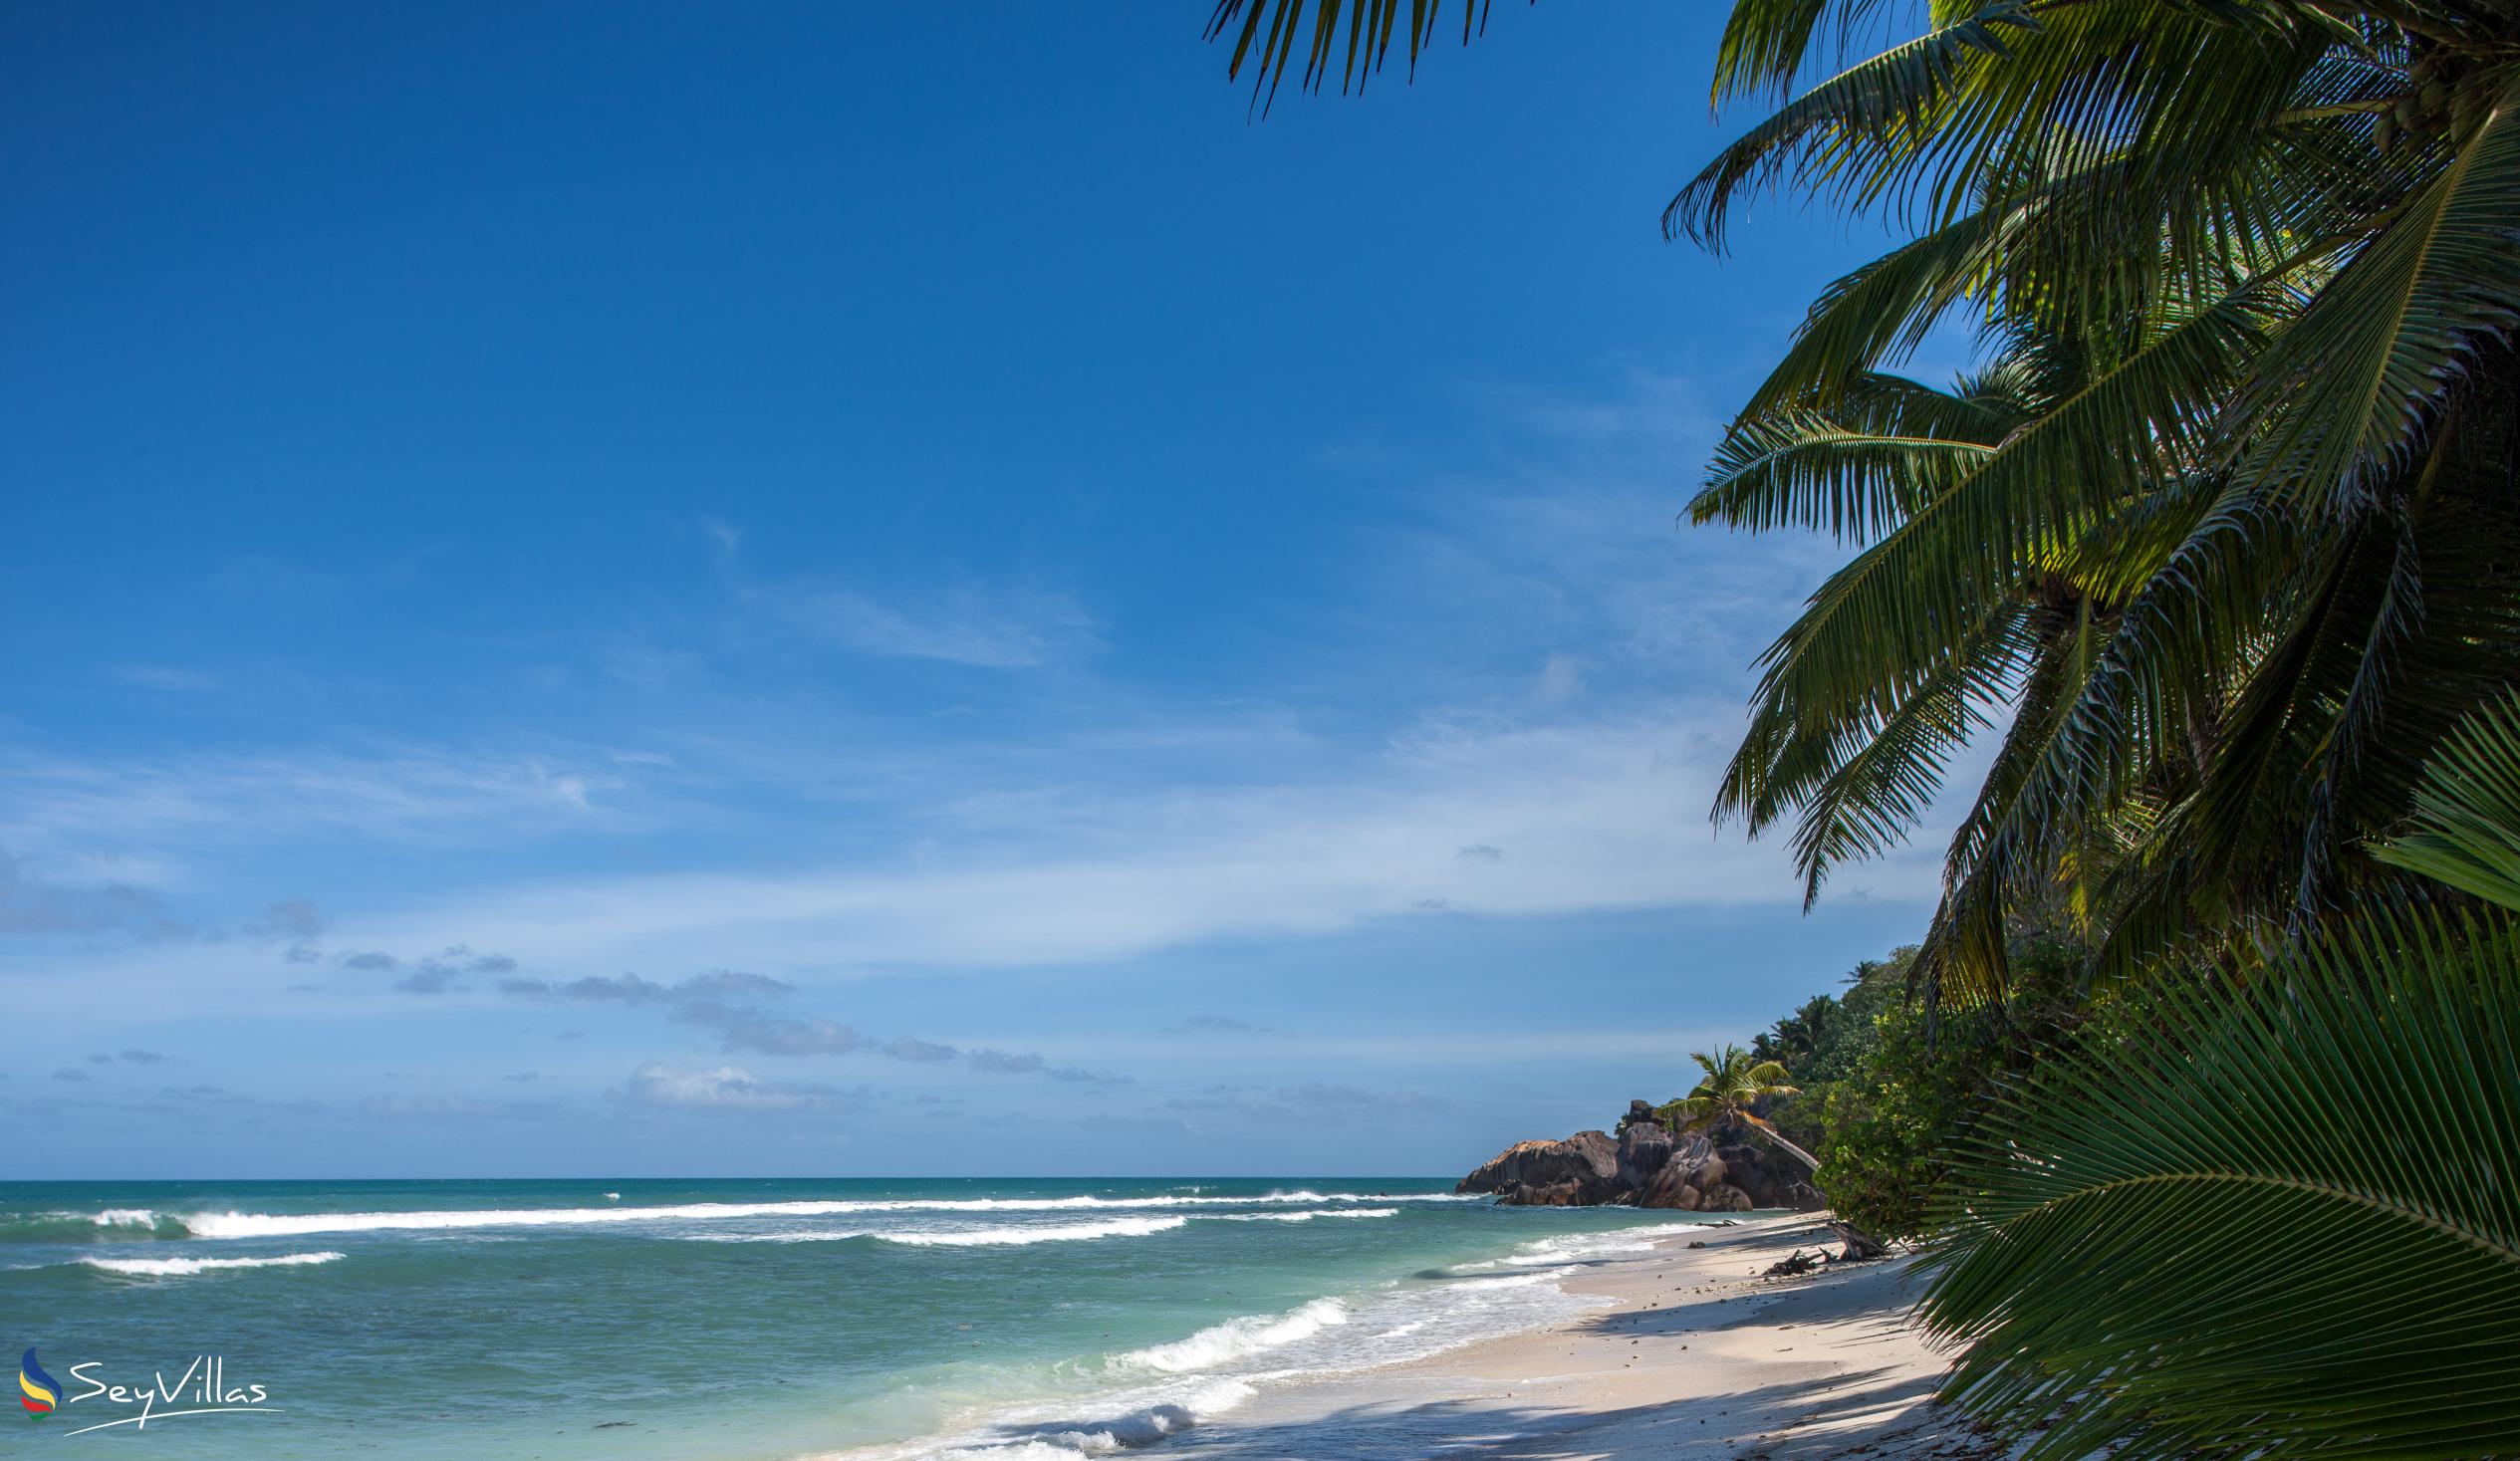 Foto 30: Tropic Villa Annex - Posizione - Praslin (Seychelles)